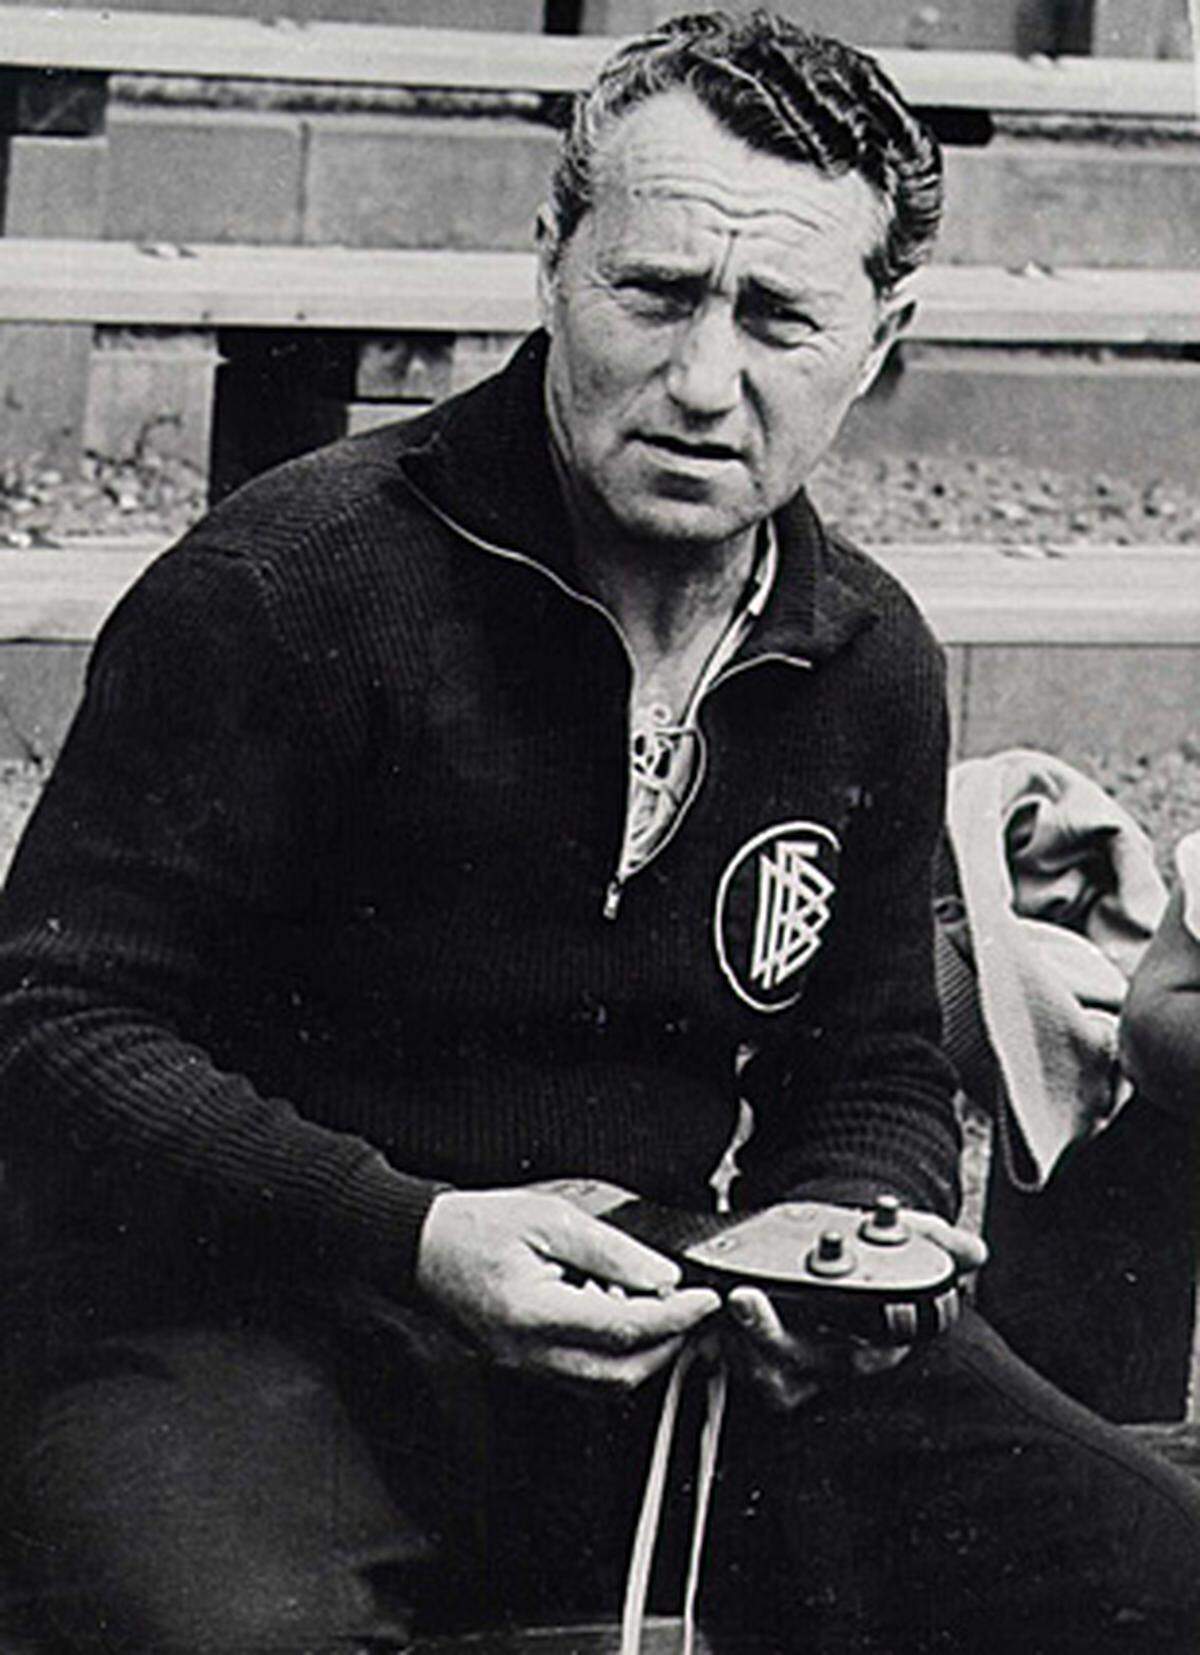 Erster Höhepunkt der Adidas-Historie war das "Fußball-Wunder von Bern" 1954. Adi Dassler, ein enger Freund des damaligen DFB-Teamchefs Sepp Herberger, stattete die deutsche Elf mit neuartigen Schuhen aus dünnerem, leichteren Leder und mit Schraubstollen aus.